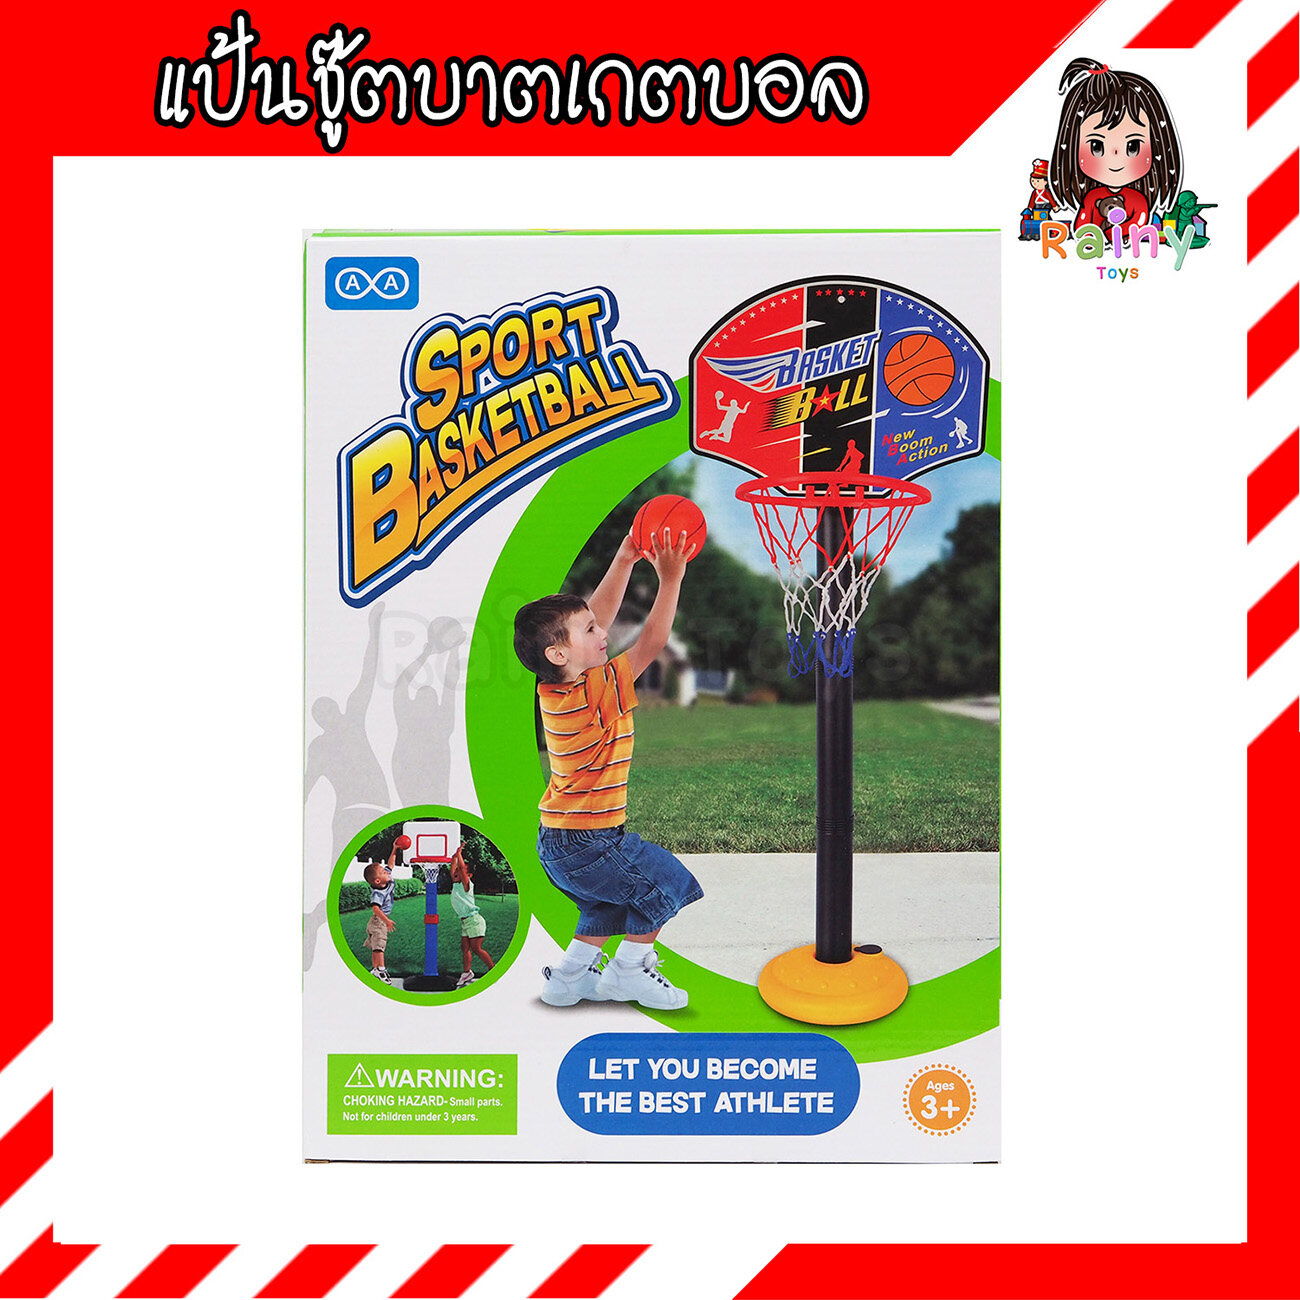 Rainy Toys ของเล่นบาสเกตบอล ของเล่นบาส ของเล่นแป้นบาส Sport Basketball Toy มี มอก. แป้นบาสของเล่น บาสเก็ตบอลเด็ก แป้นบาสเด็ก ของเล่นกีฬา